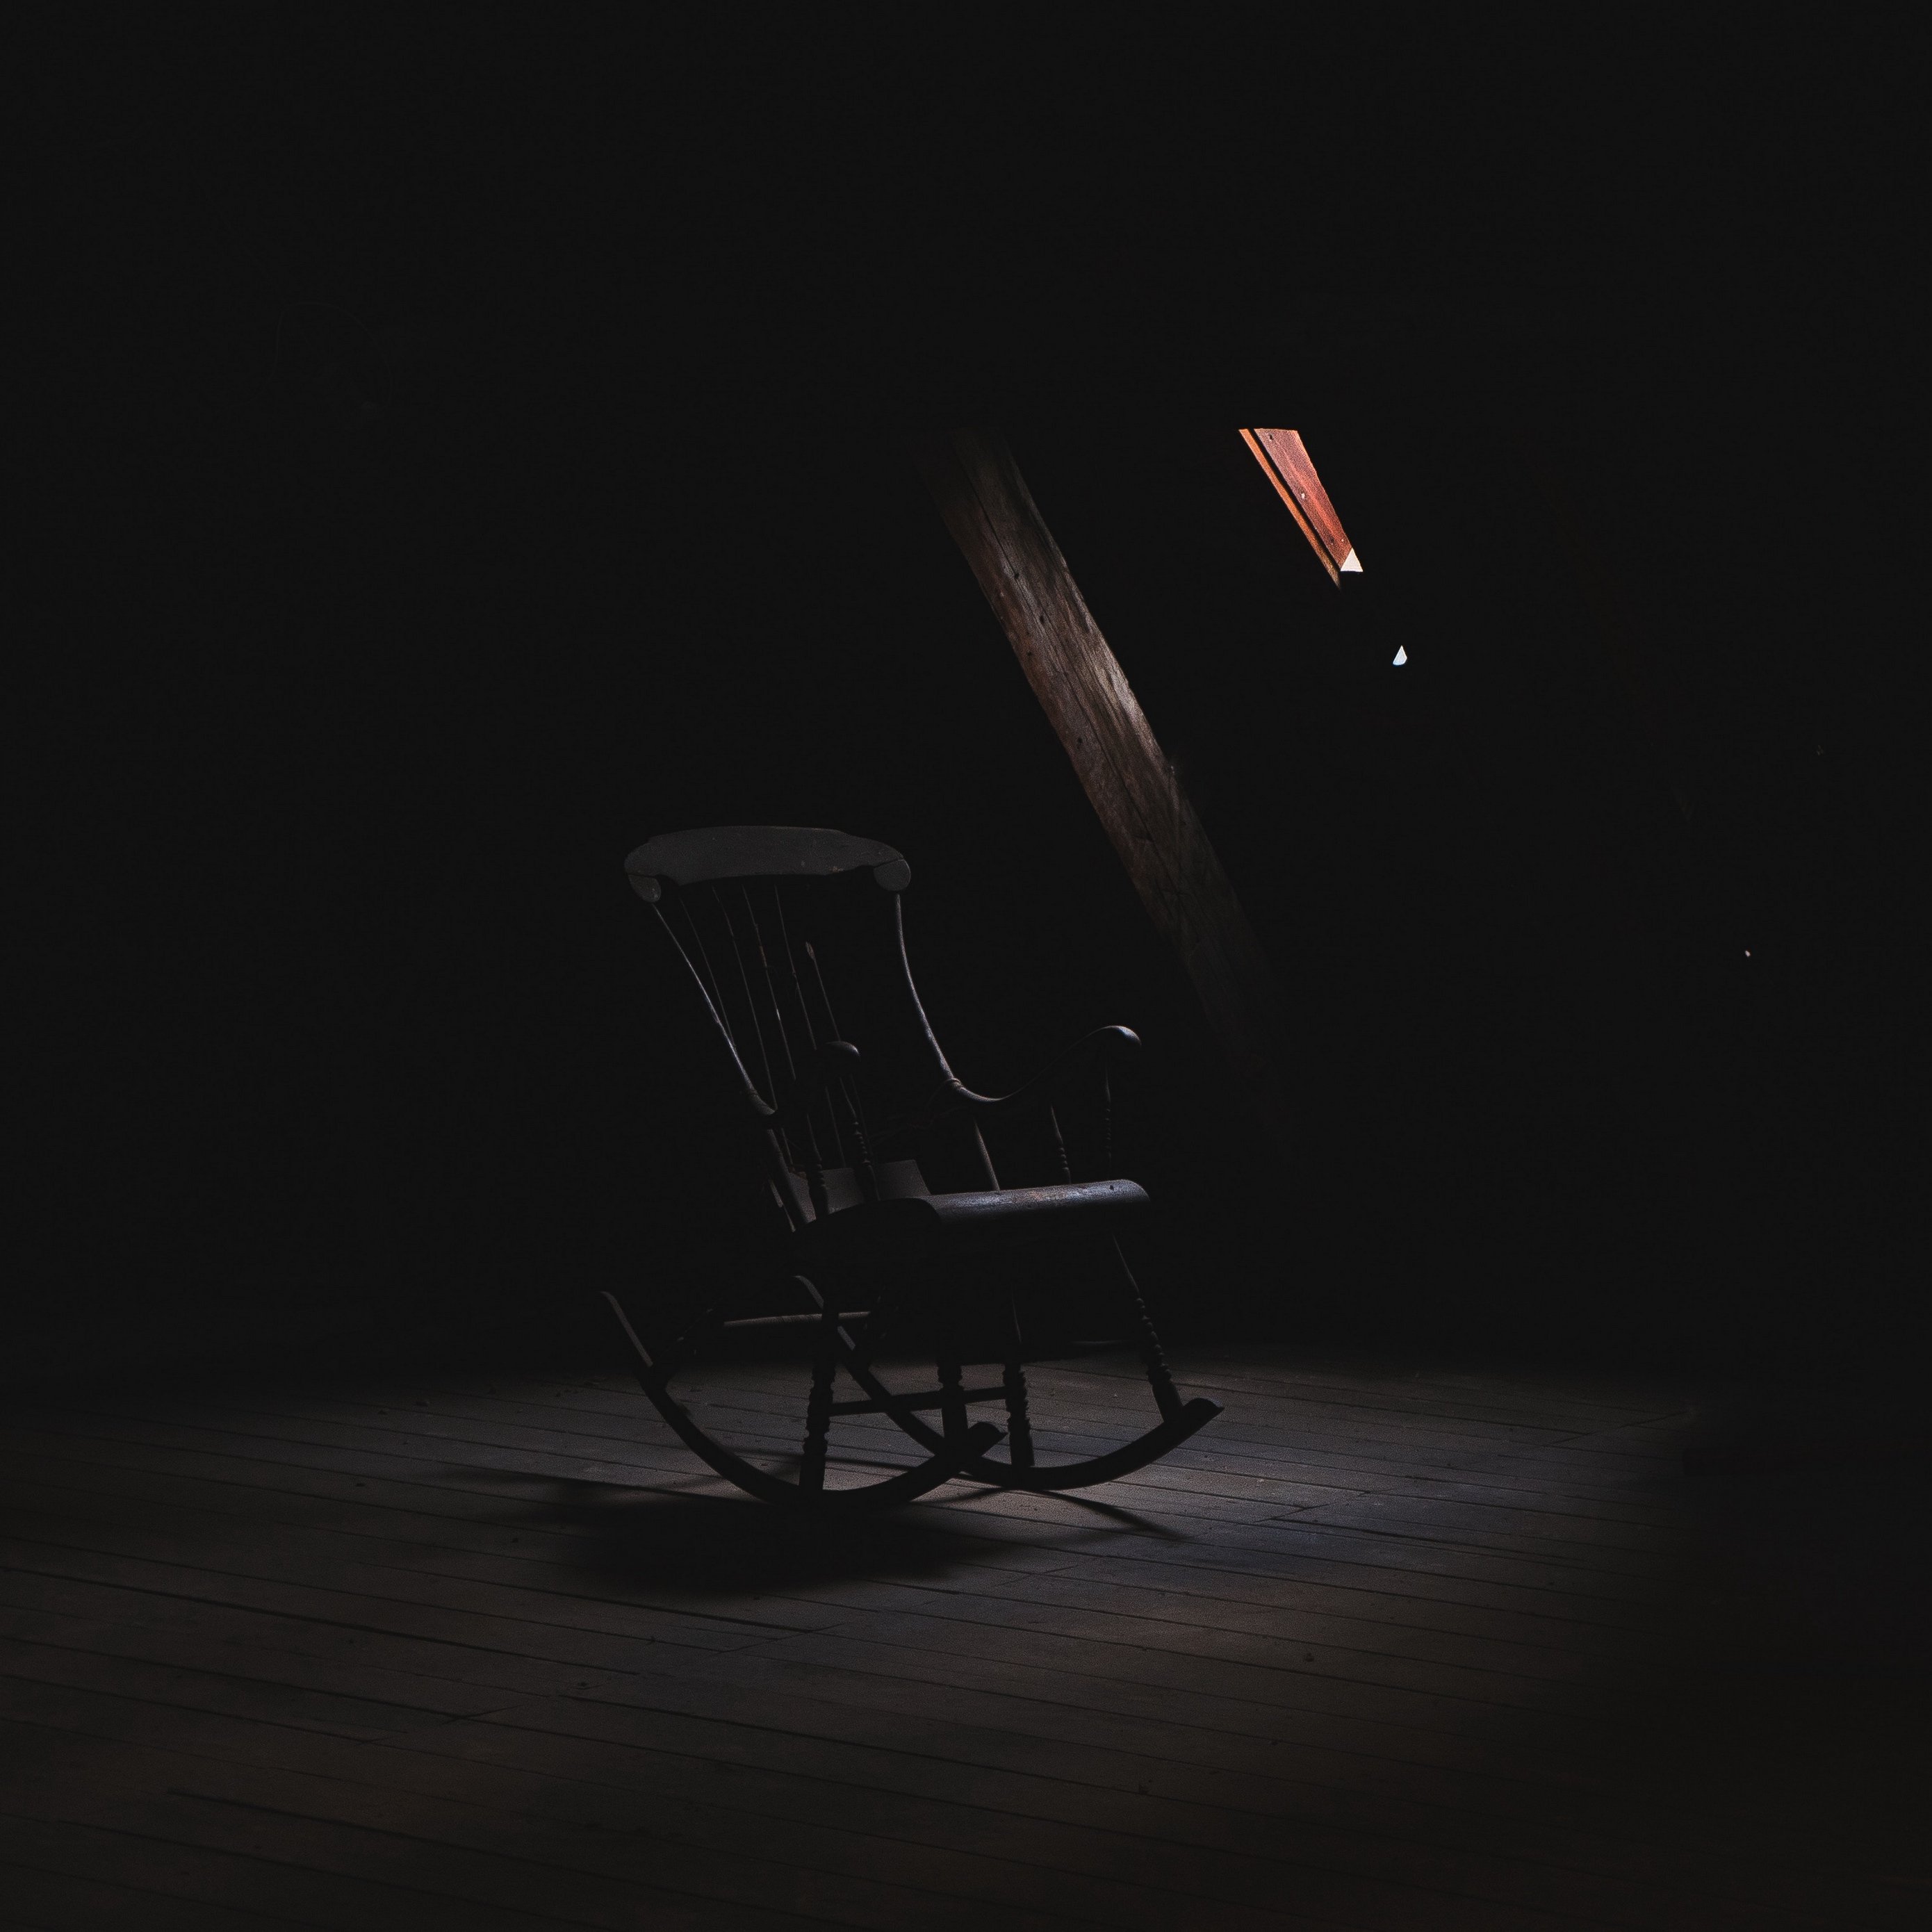 Download wallpaper 2780x2780 rocking chair, loft, dark, creepy ipad